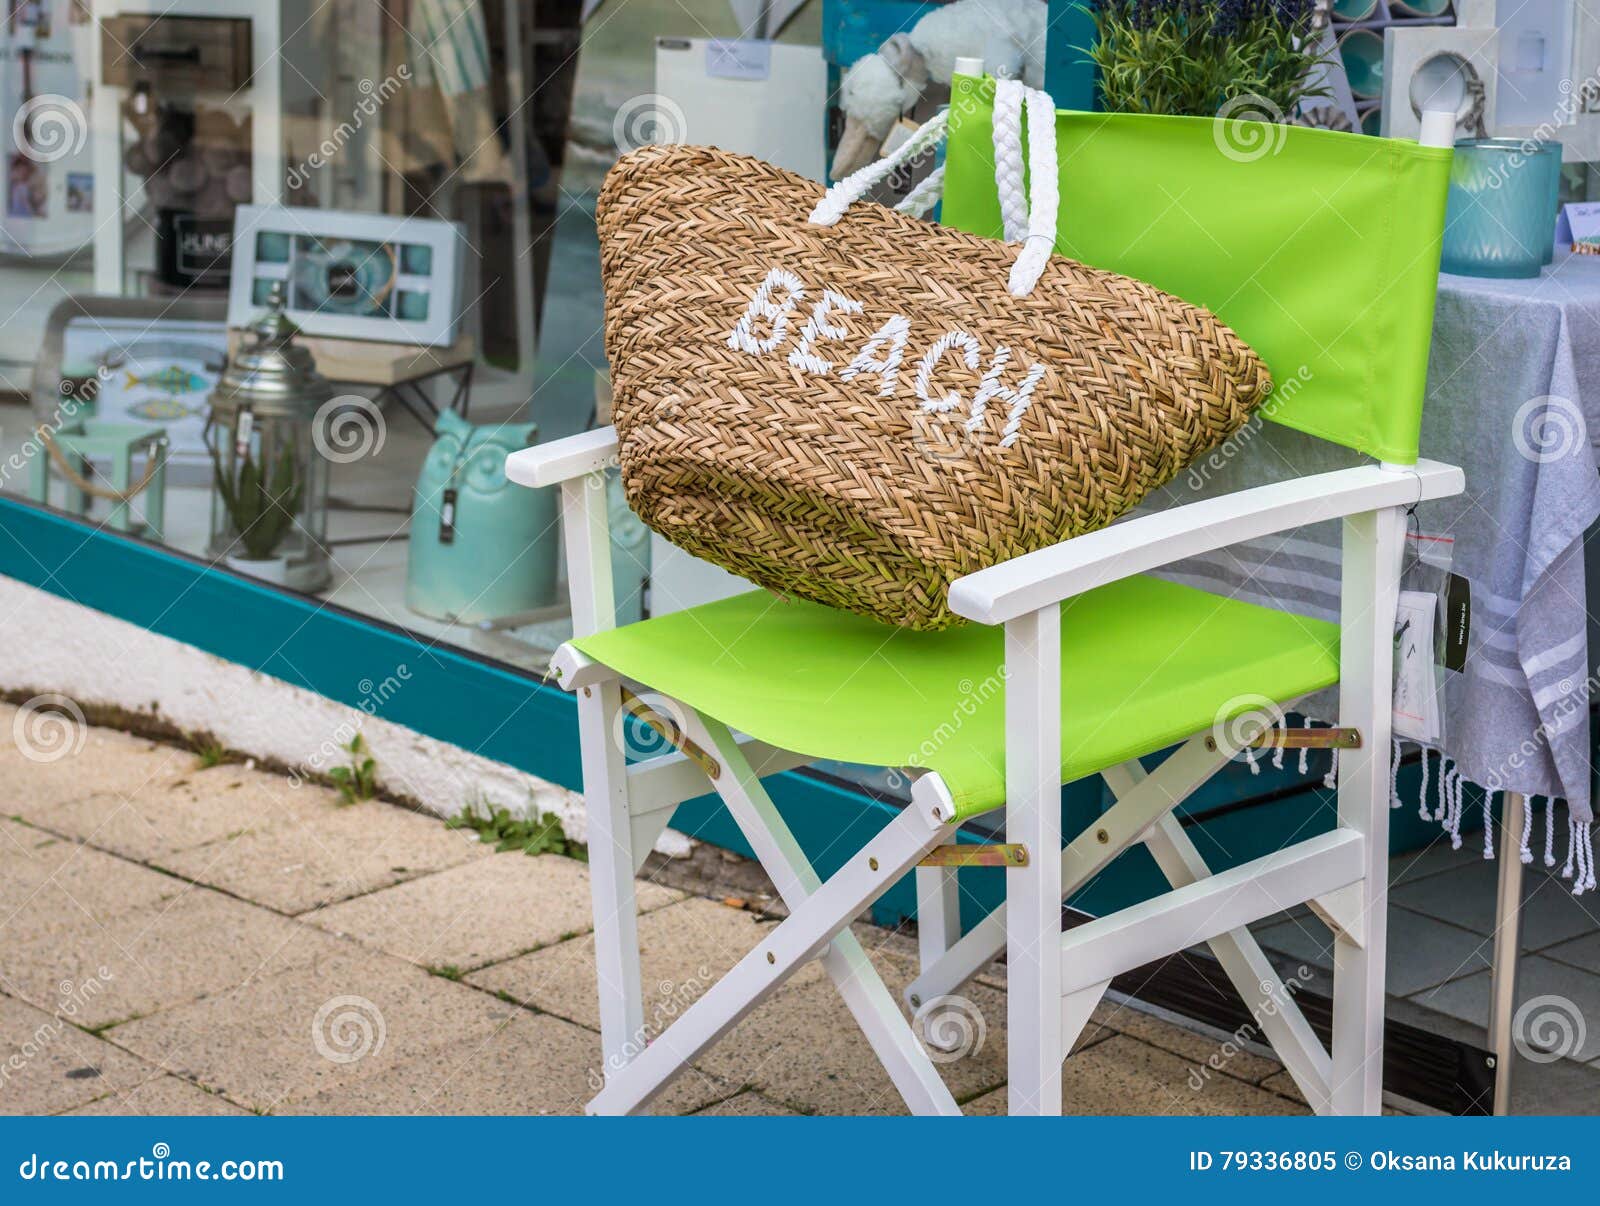 Beach Bag Green Chair Street 79336805 